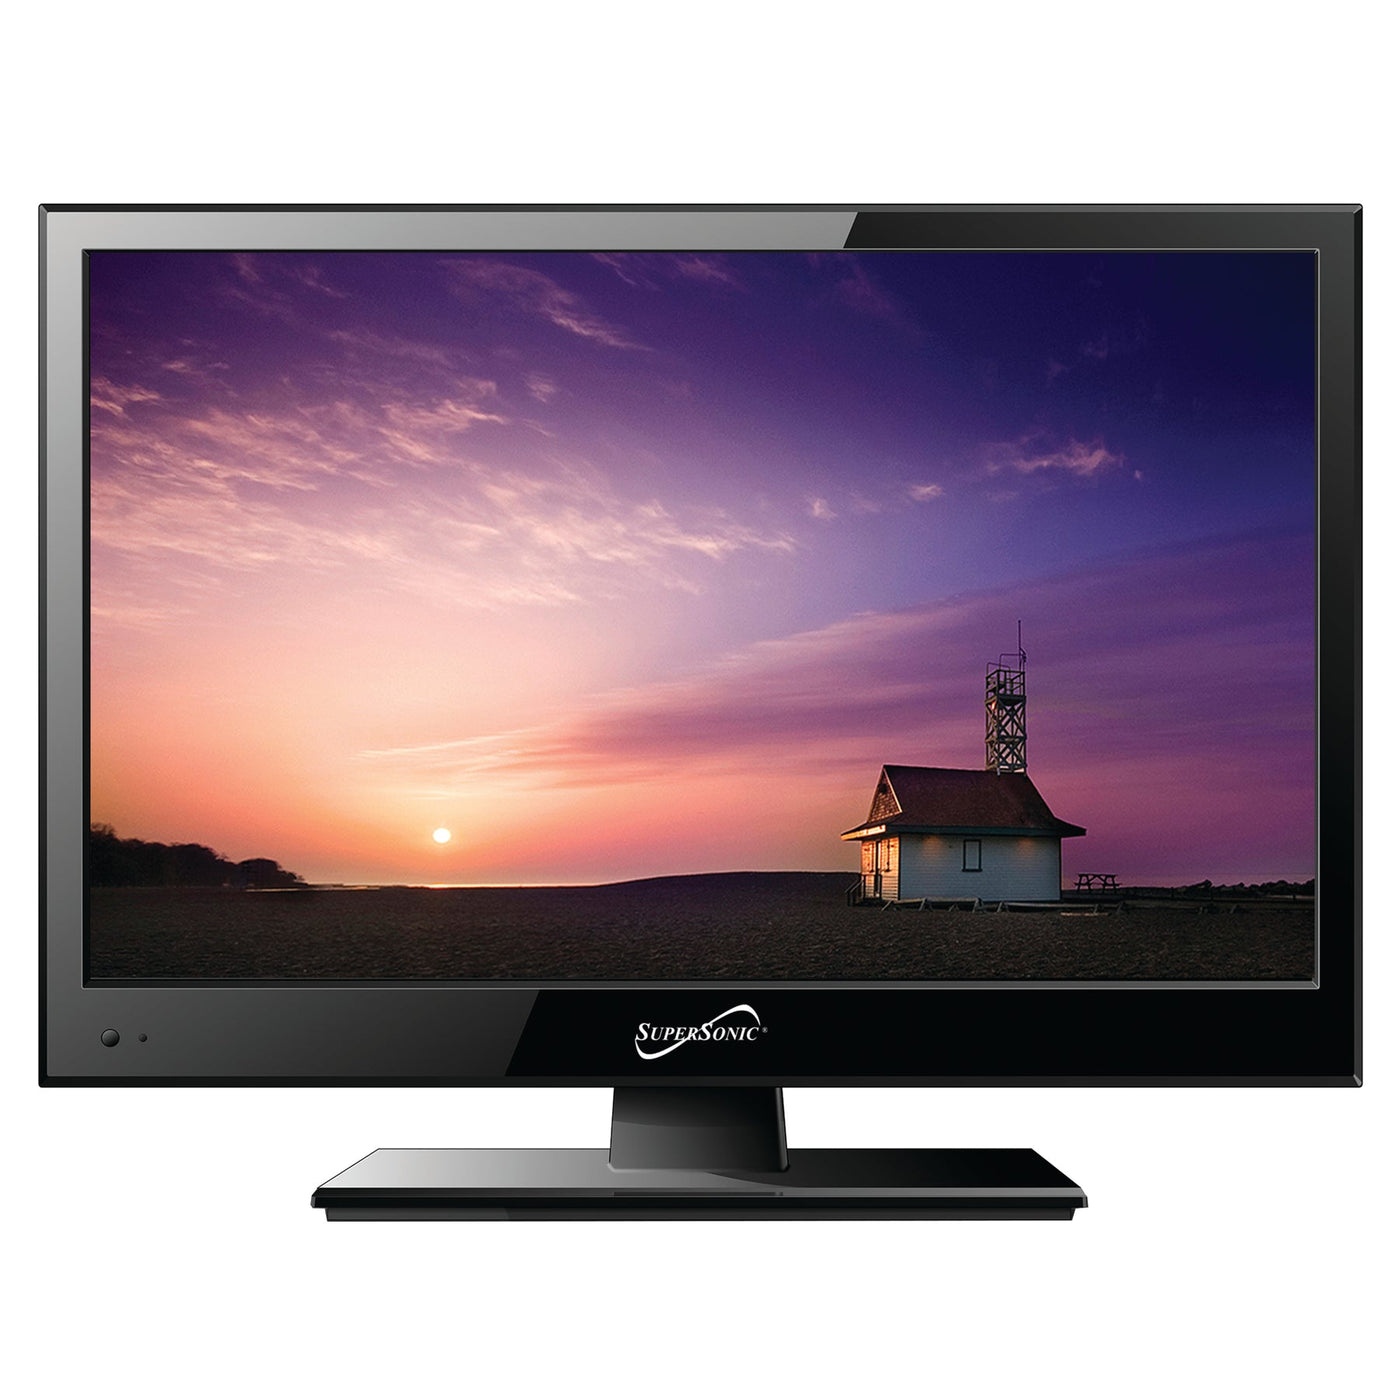 TV LED 16 Sunstech HD + DVD TLEXI1662HDBK, sunstech TLEXI1662HDBK, venta  online, comprar TV LED 16 Sunstech HD + DVD TLEXI1662HDBK